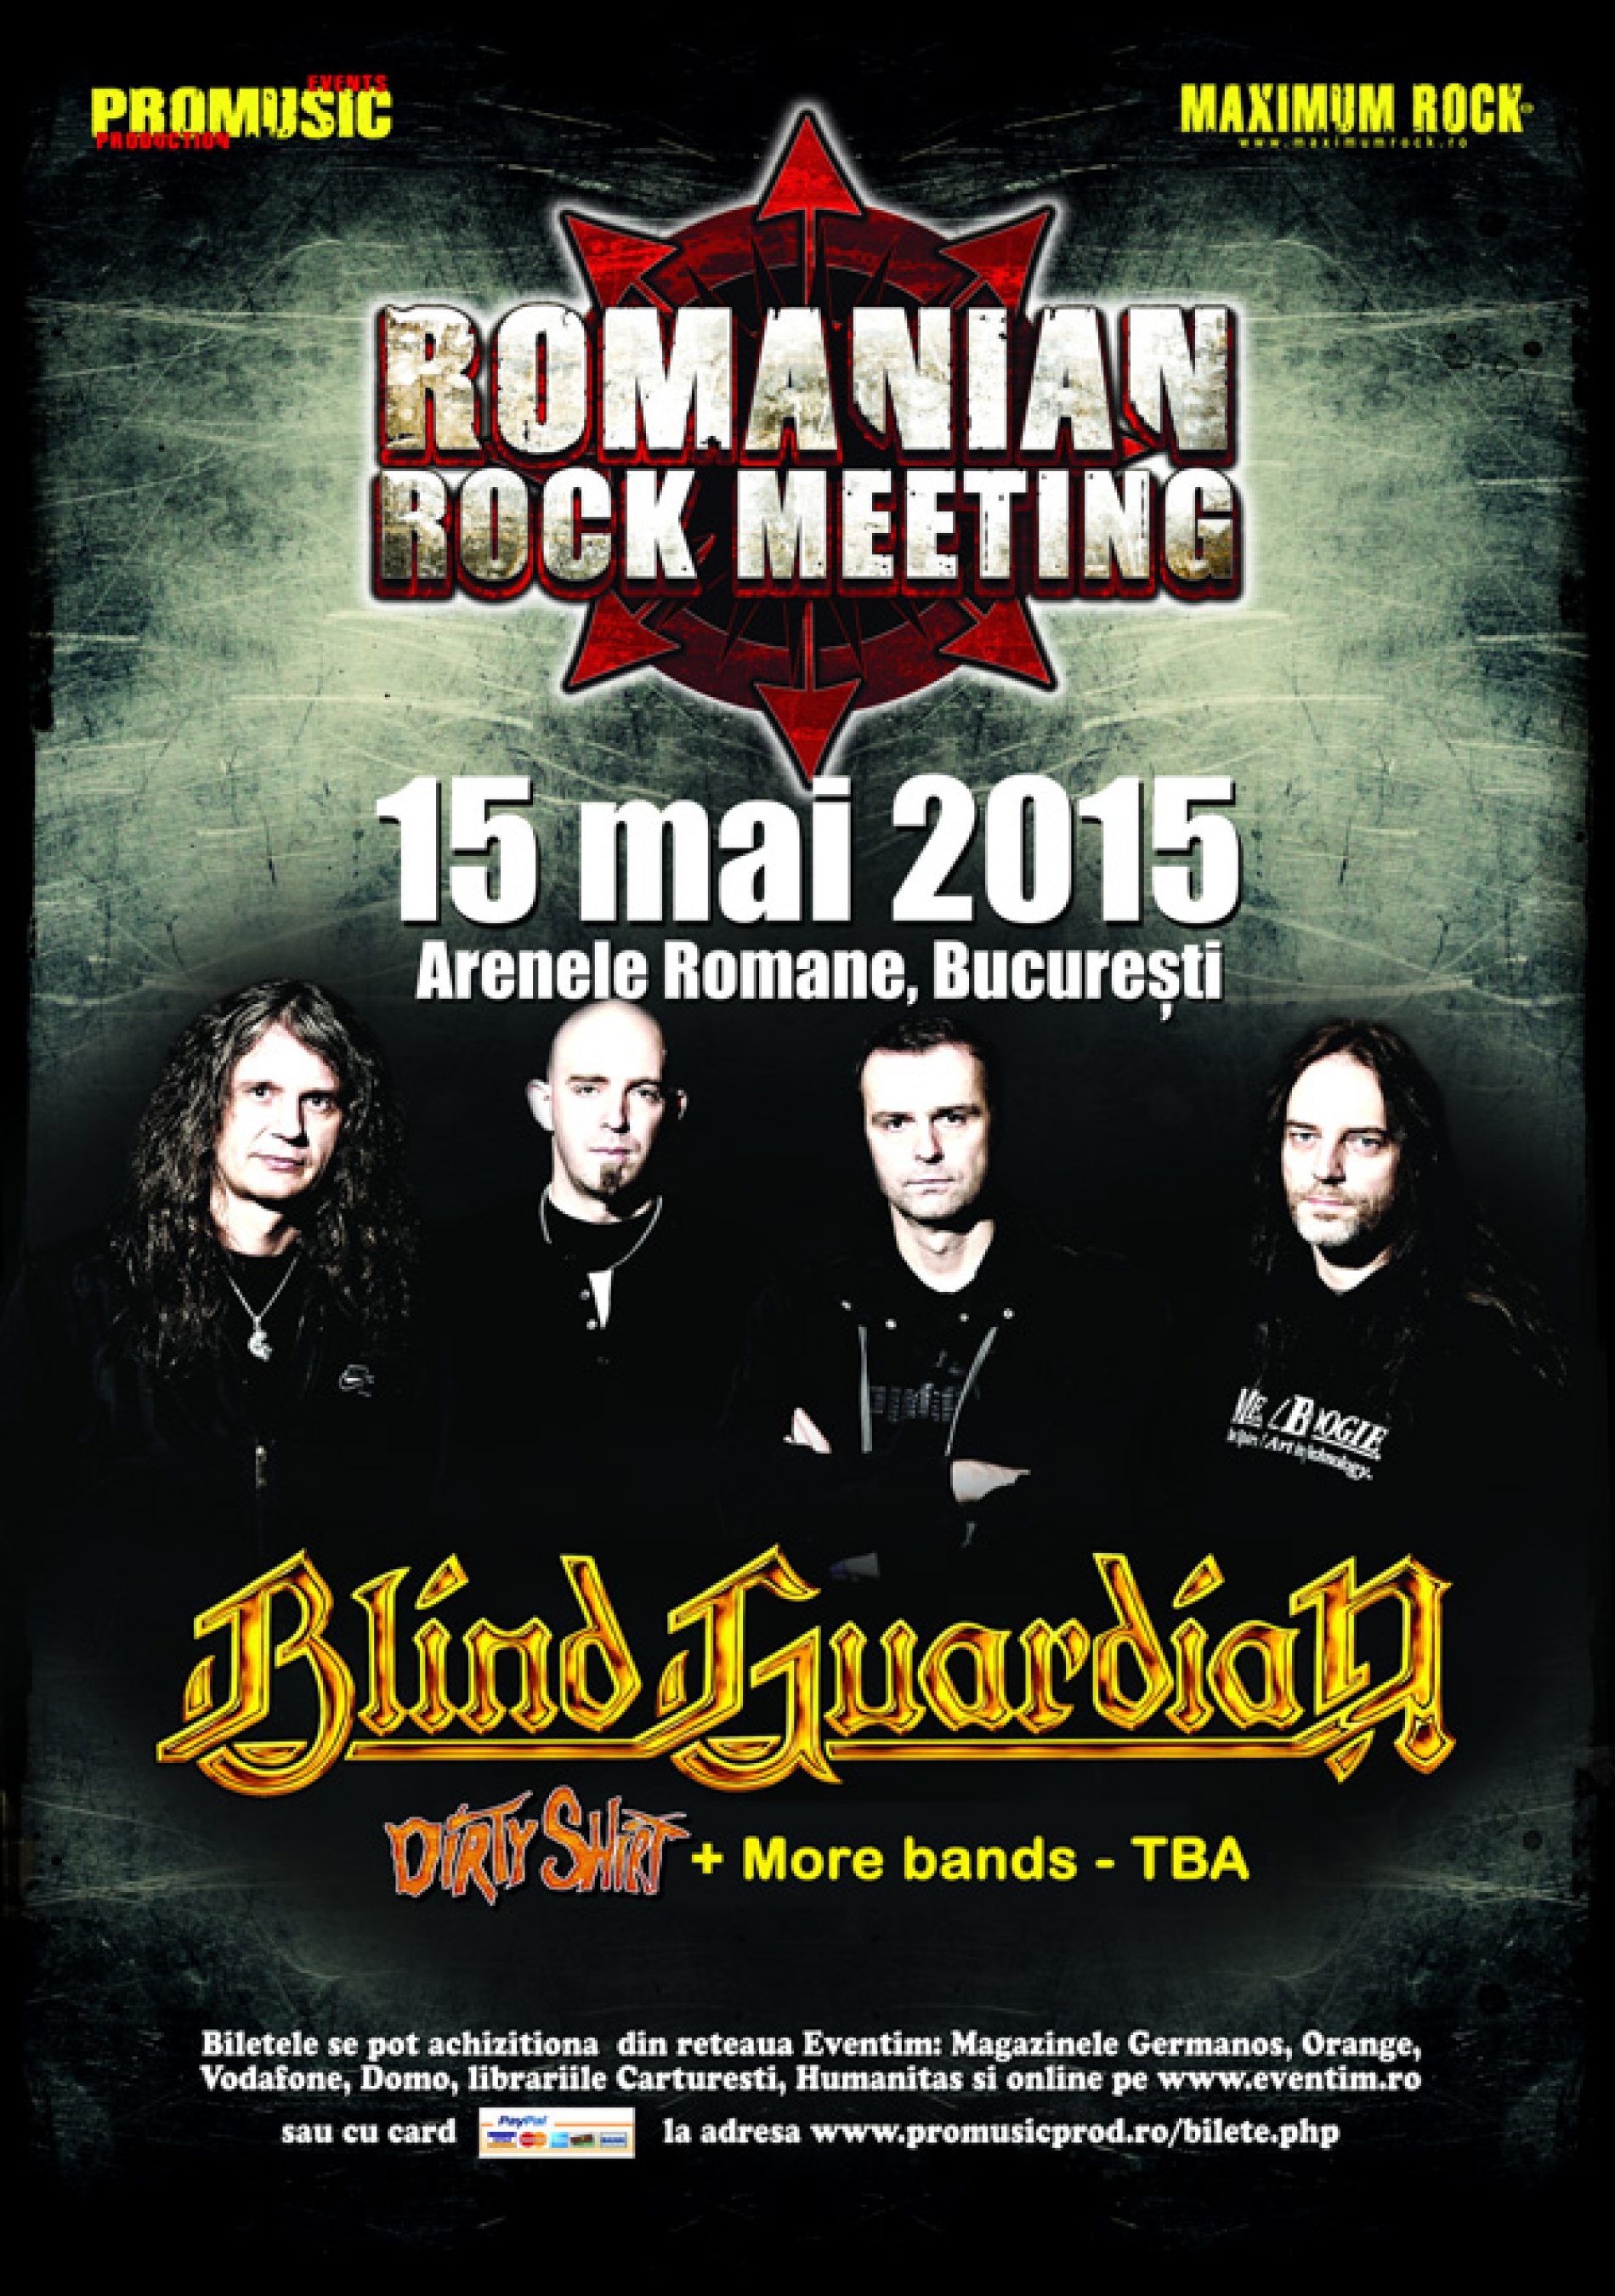 Blind Guardian le prezinta fanilor cum lucreaza o formatie metal cu o orchestra simfonica!